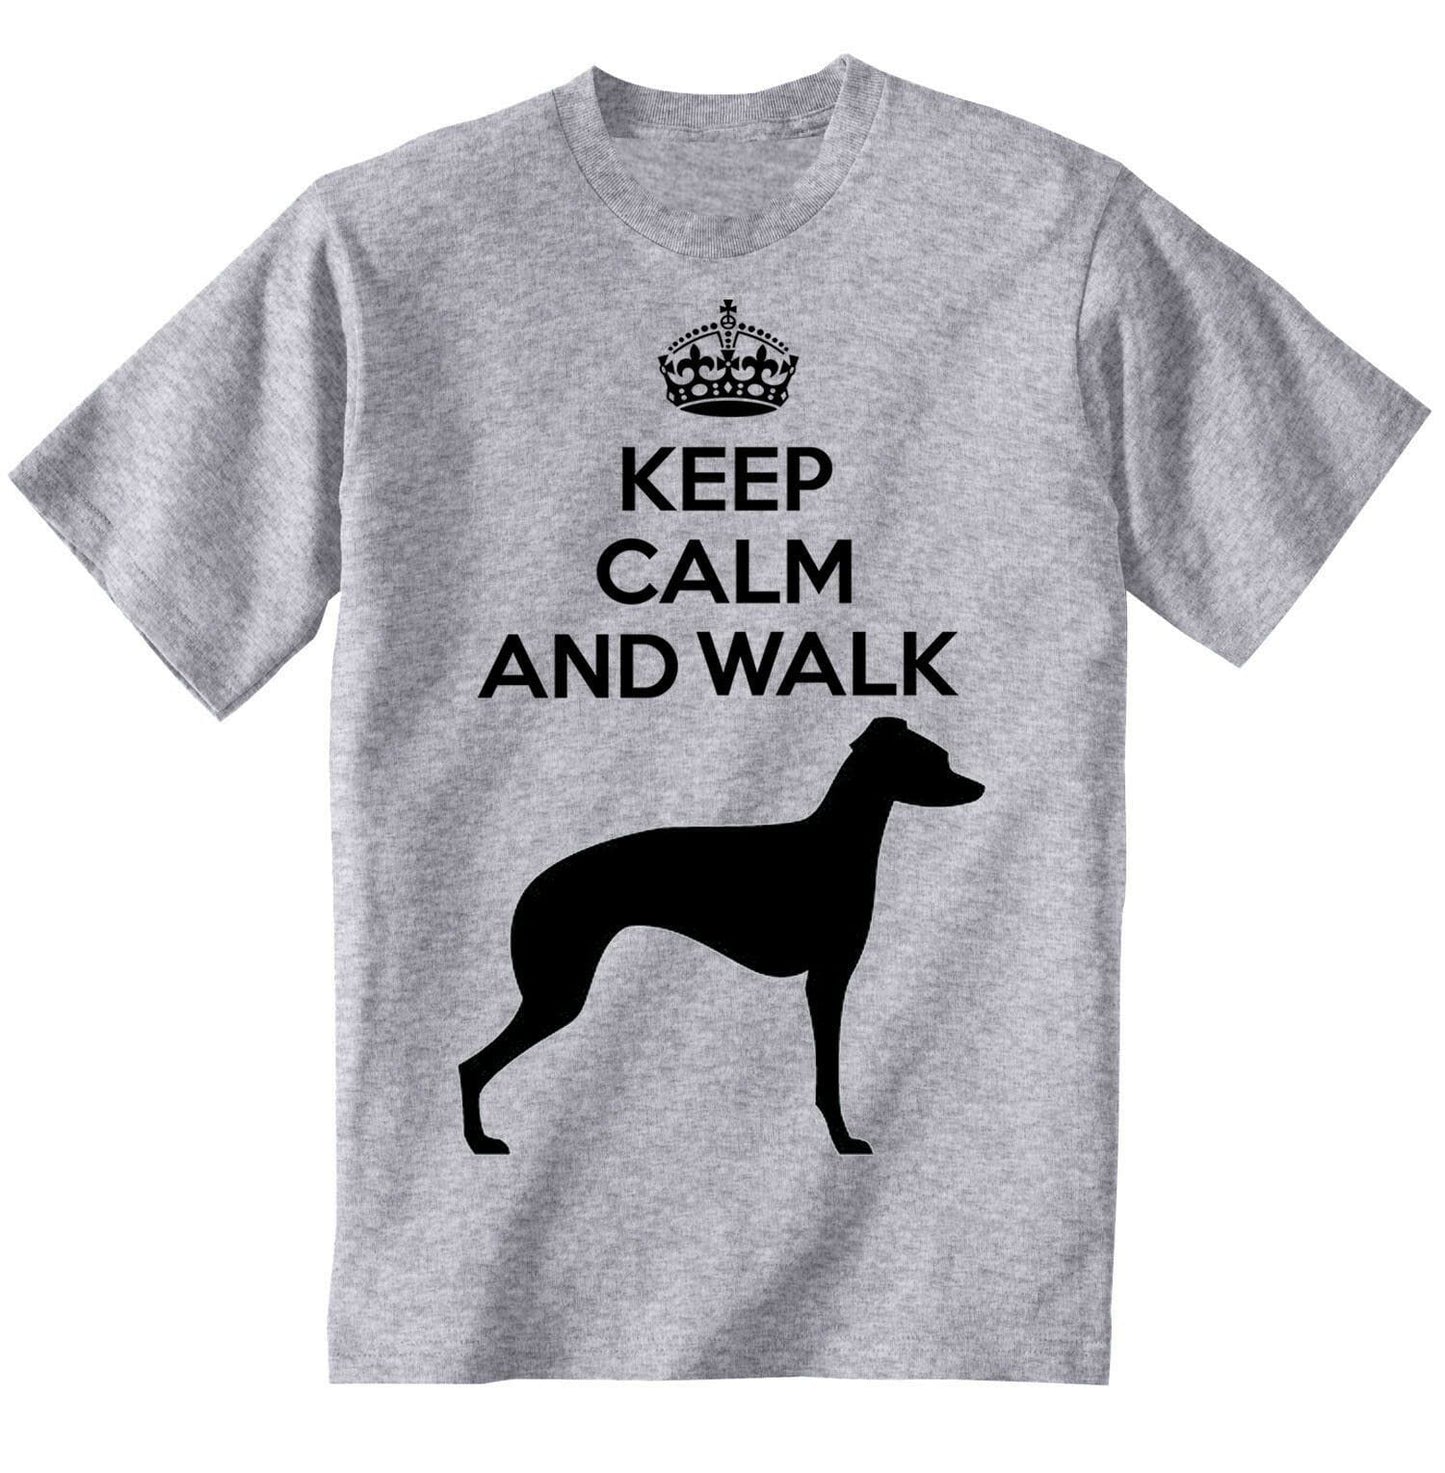 T-Shirt unisexe graphique chien <span>gris</span> italien, gardez votre calme et marchez drôle Tee-shirt pour chien 